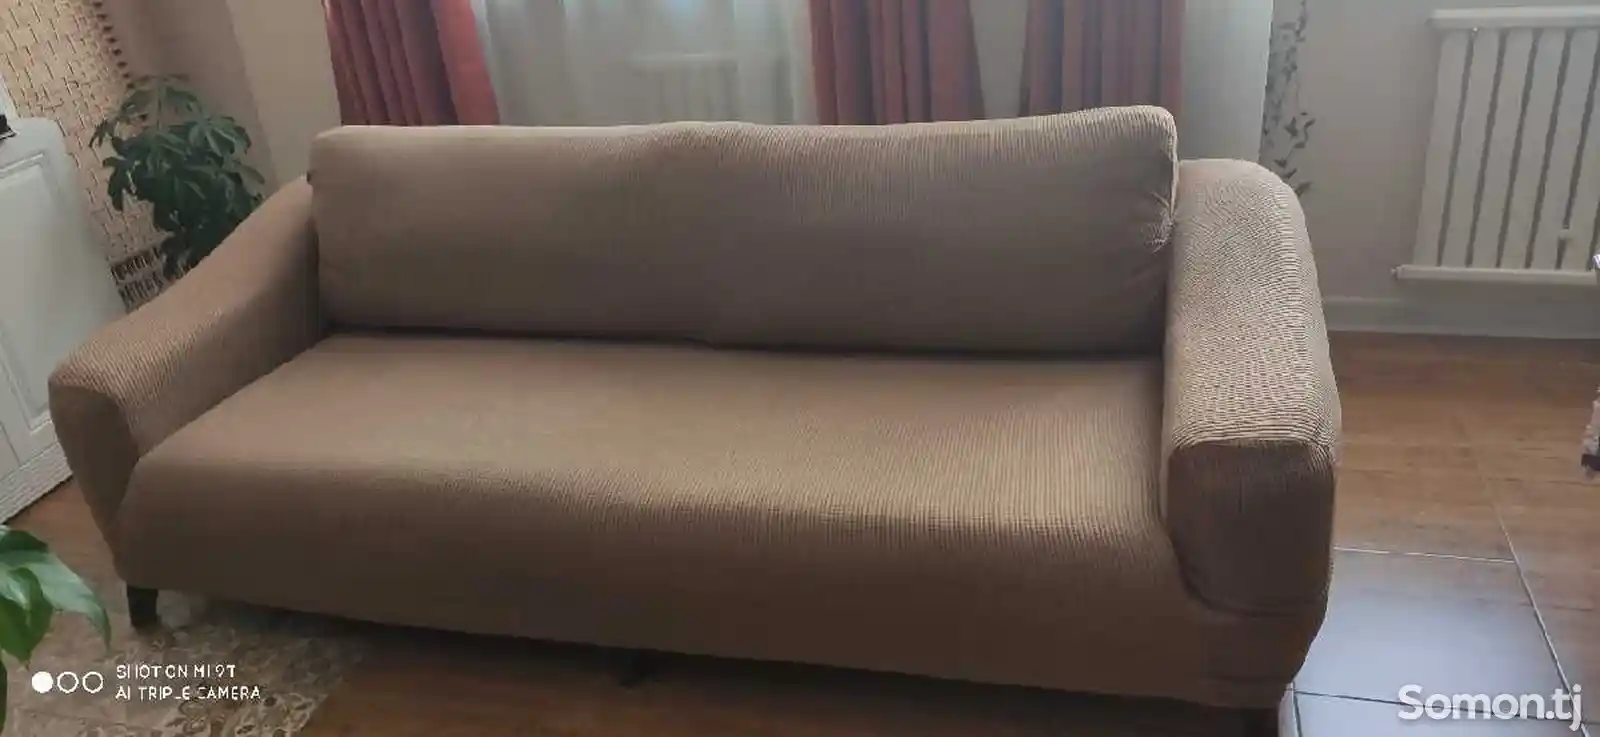 Универсальный чехол для диванов-1